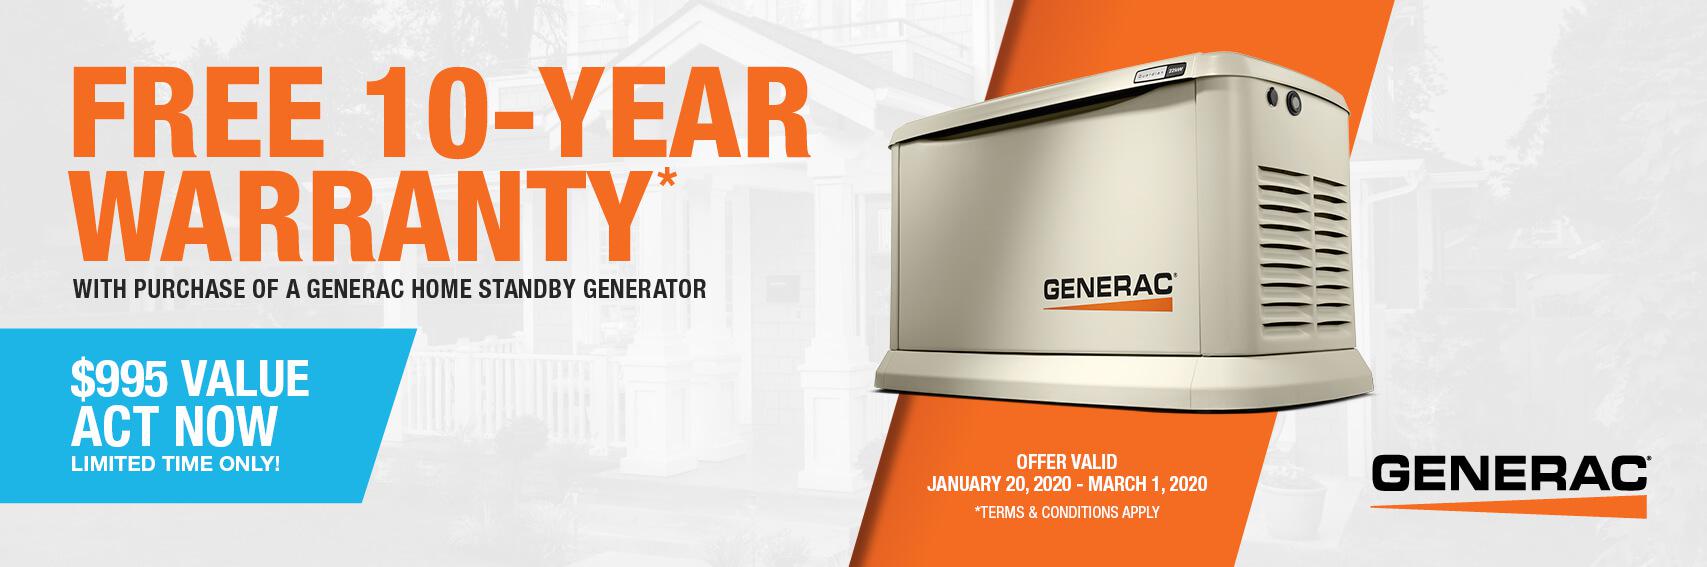 Homestandby Generator Deal | Warranty Offer | Generac Dealer | Fremont, IN